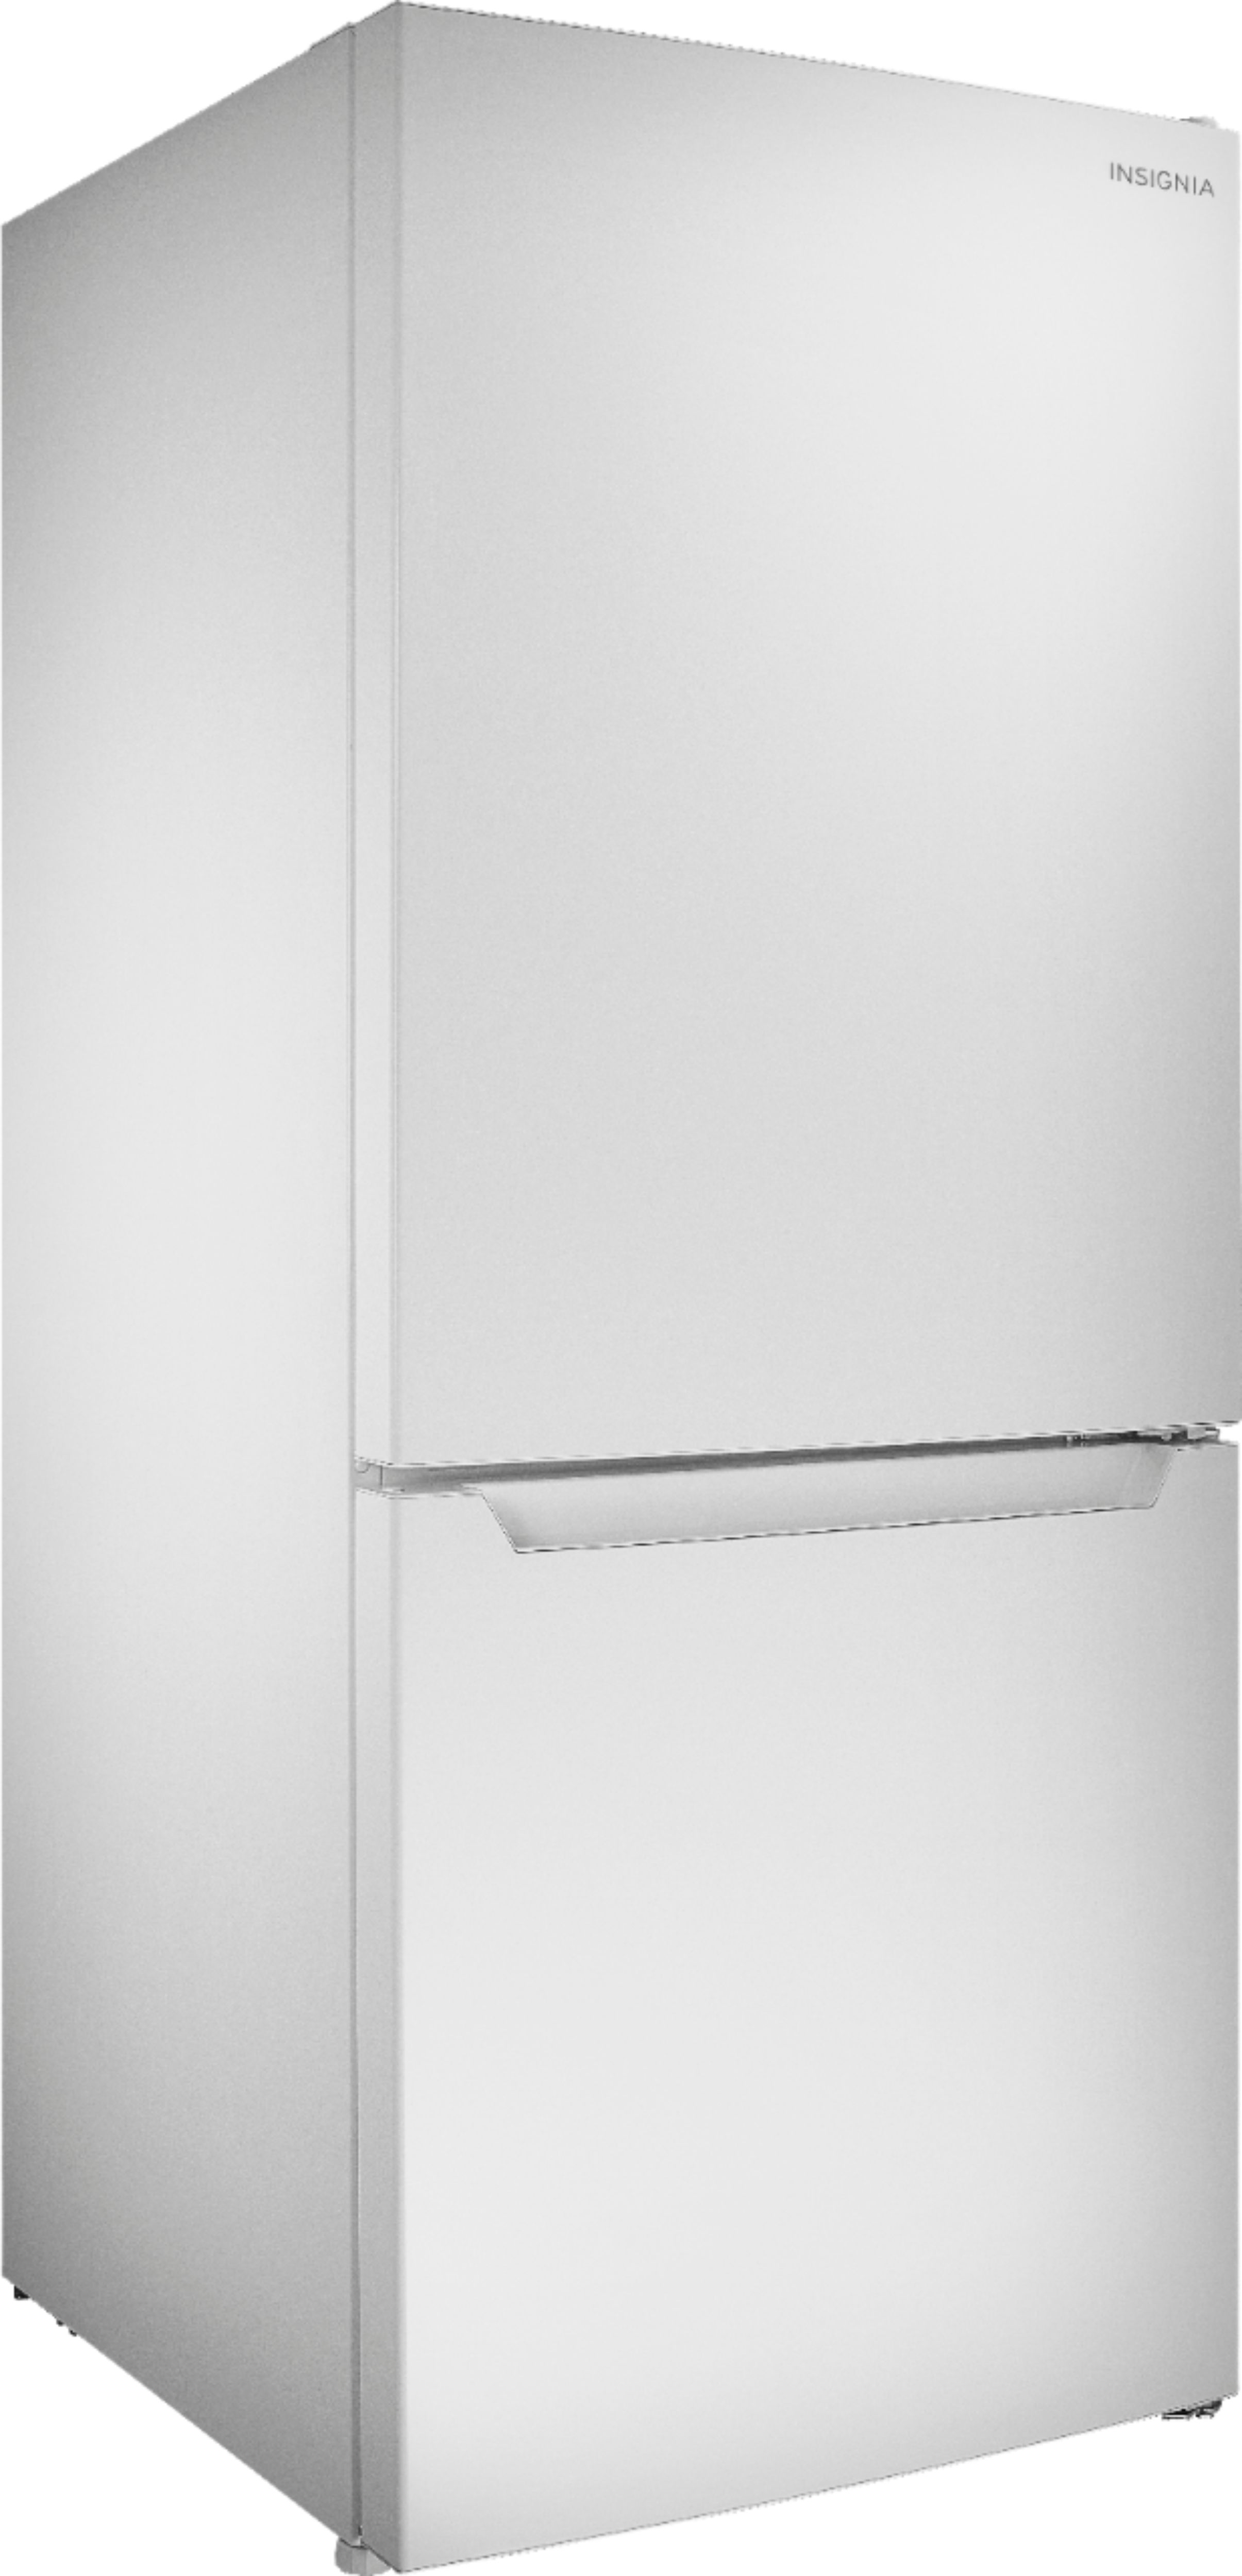 Angle View: Insignia™ - 9.2 Cu. Ft. Bottom-Freezer Refrigerator - White